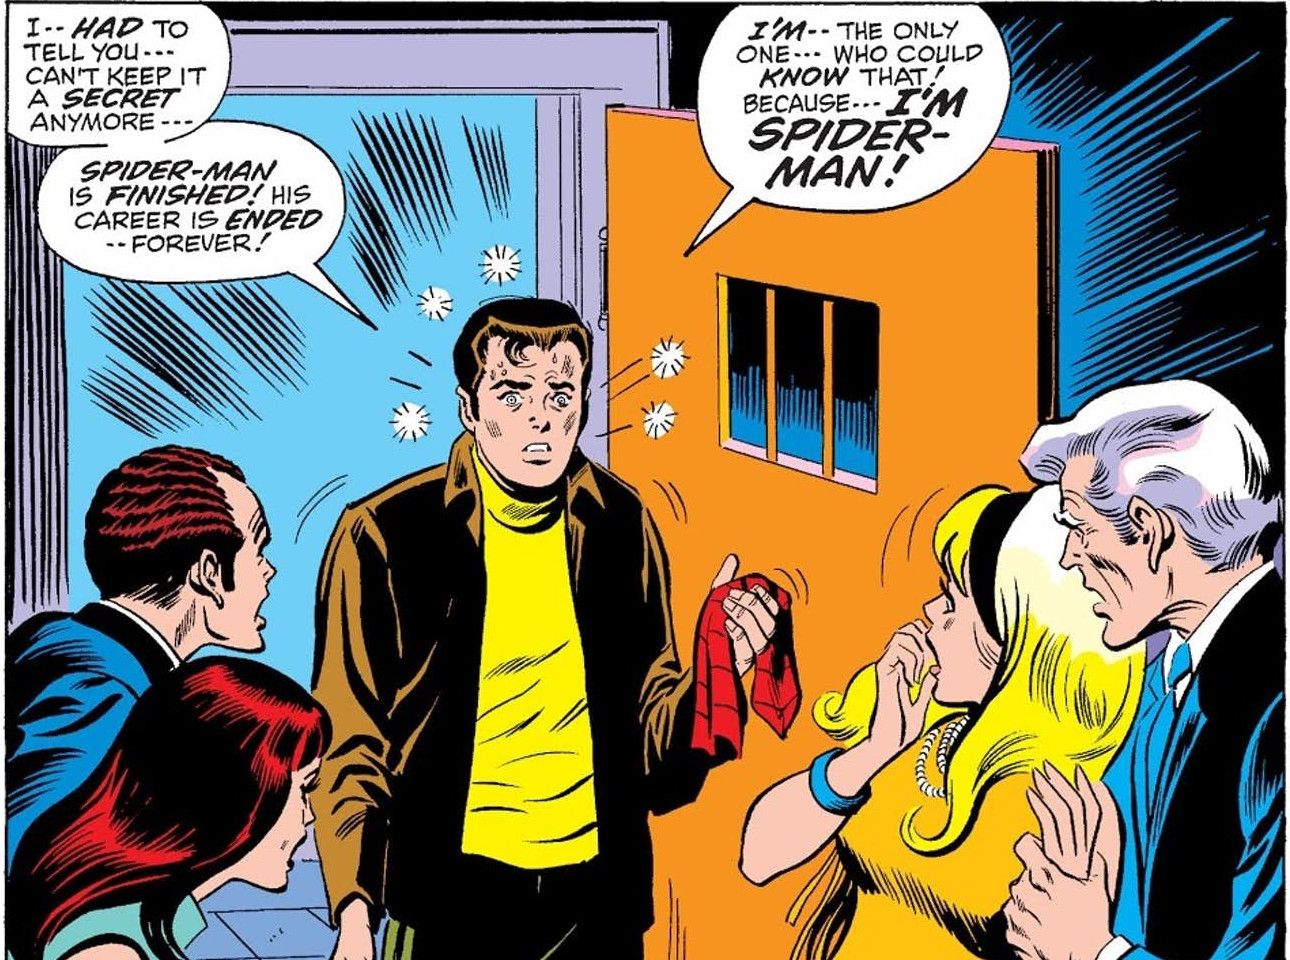 Spider-Man Peter Parker gets the flu